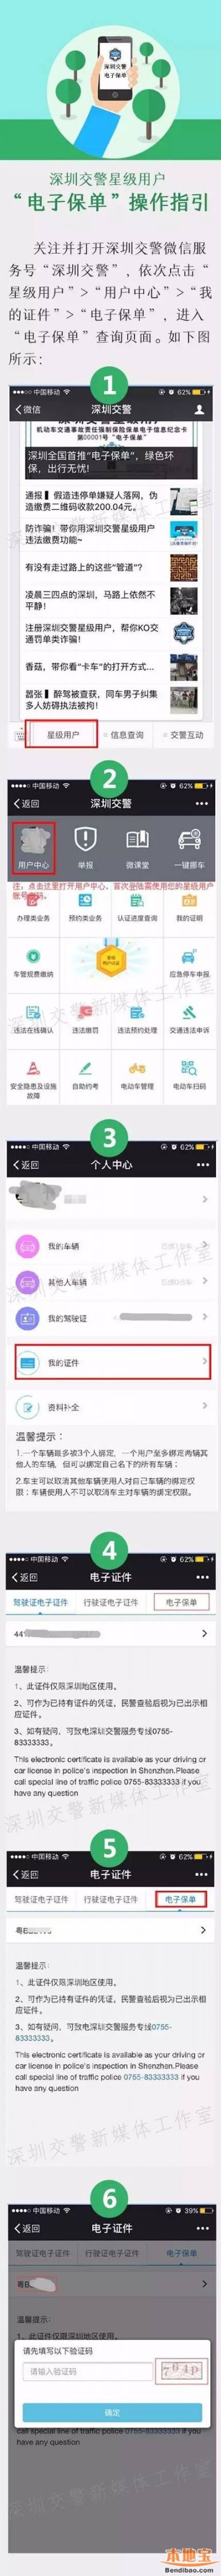 深圳首推交强险电子保单 星级用户可免带两证一险